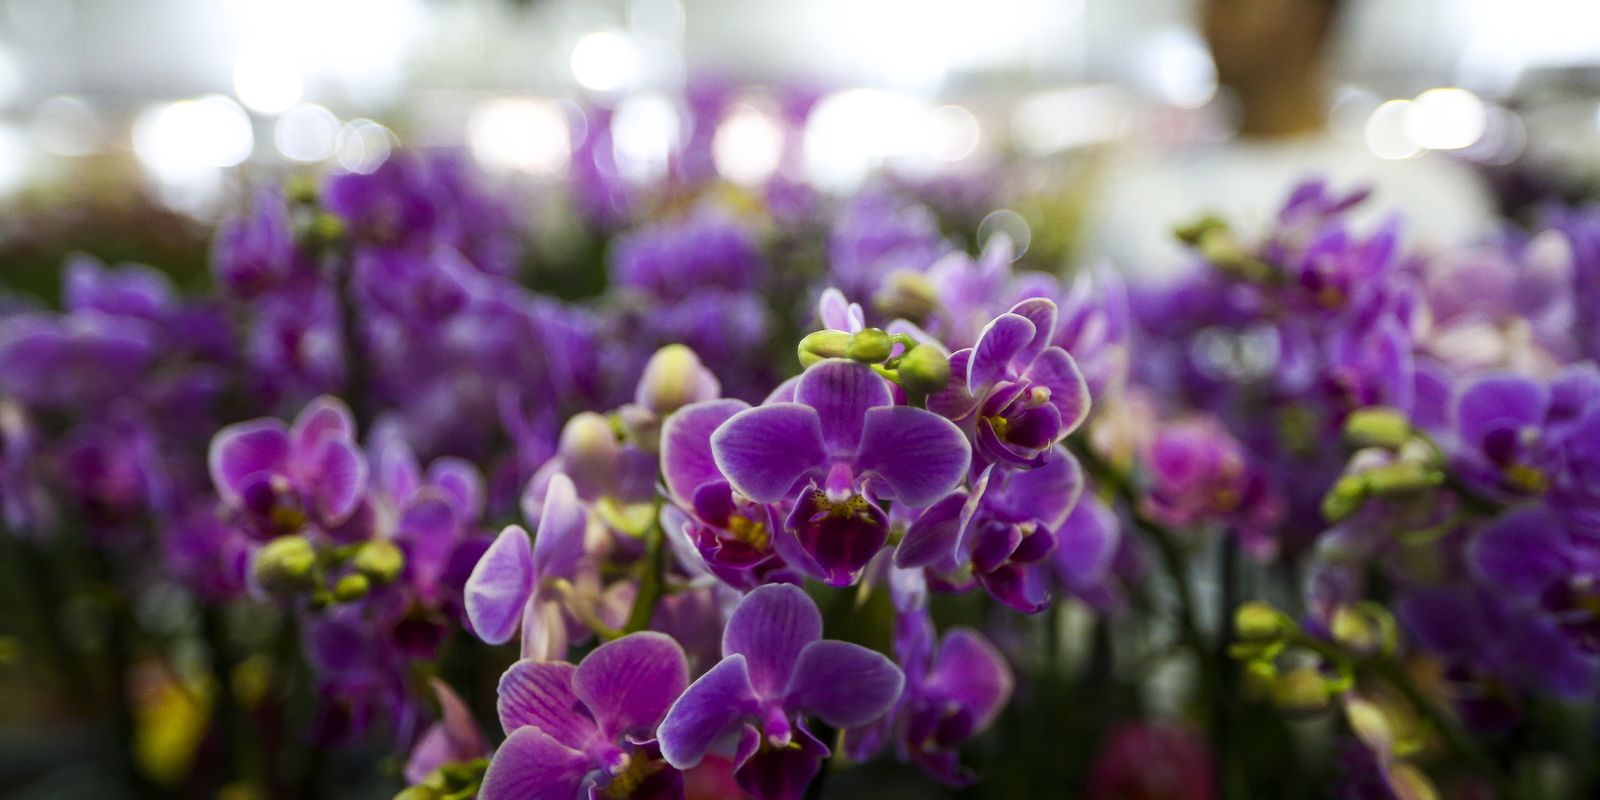 Setor de flores da Ceagesp estima aumento nas vendas para Dia das Mães |  Agência Brasil